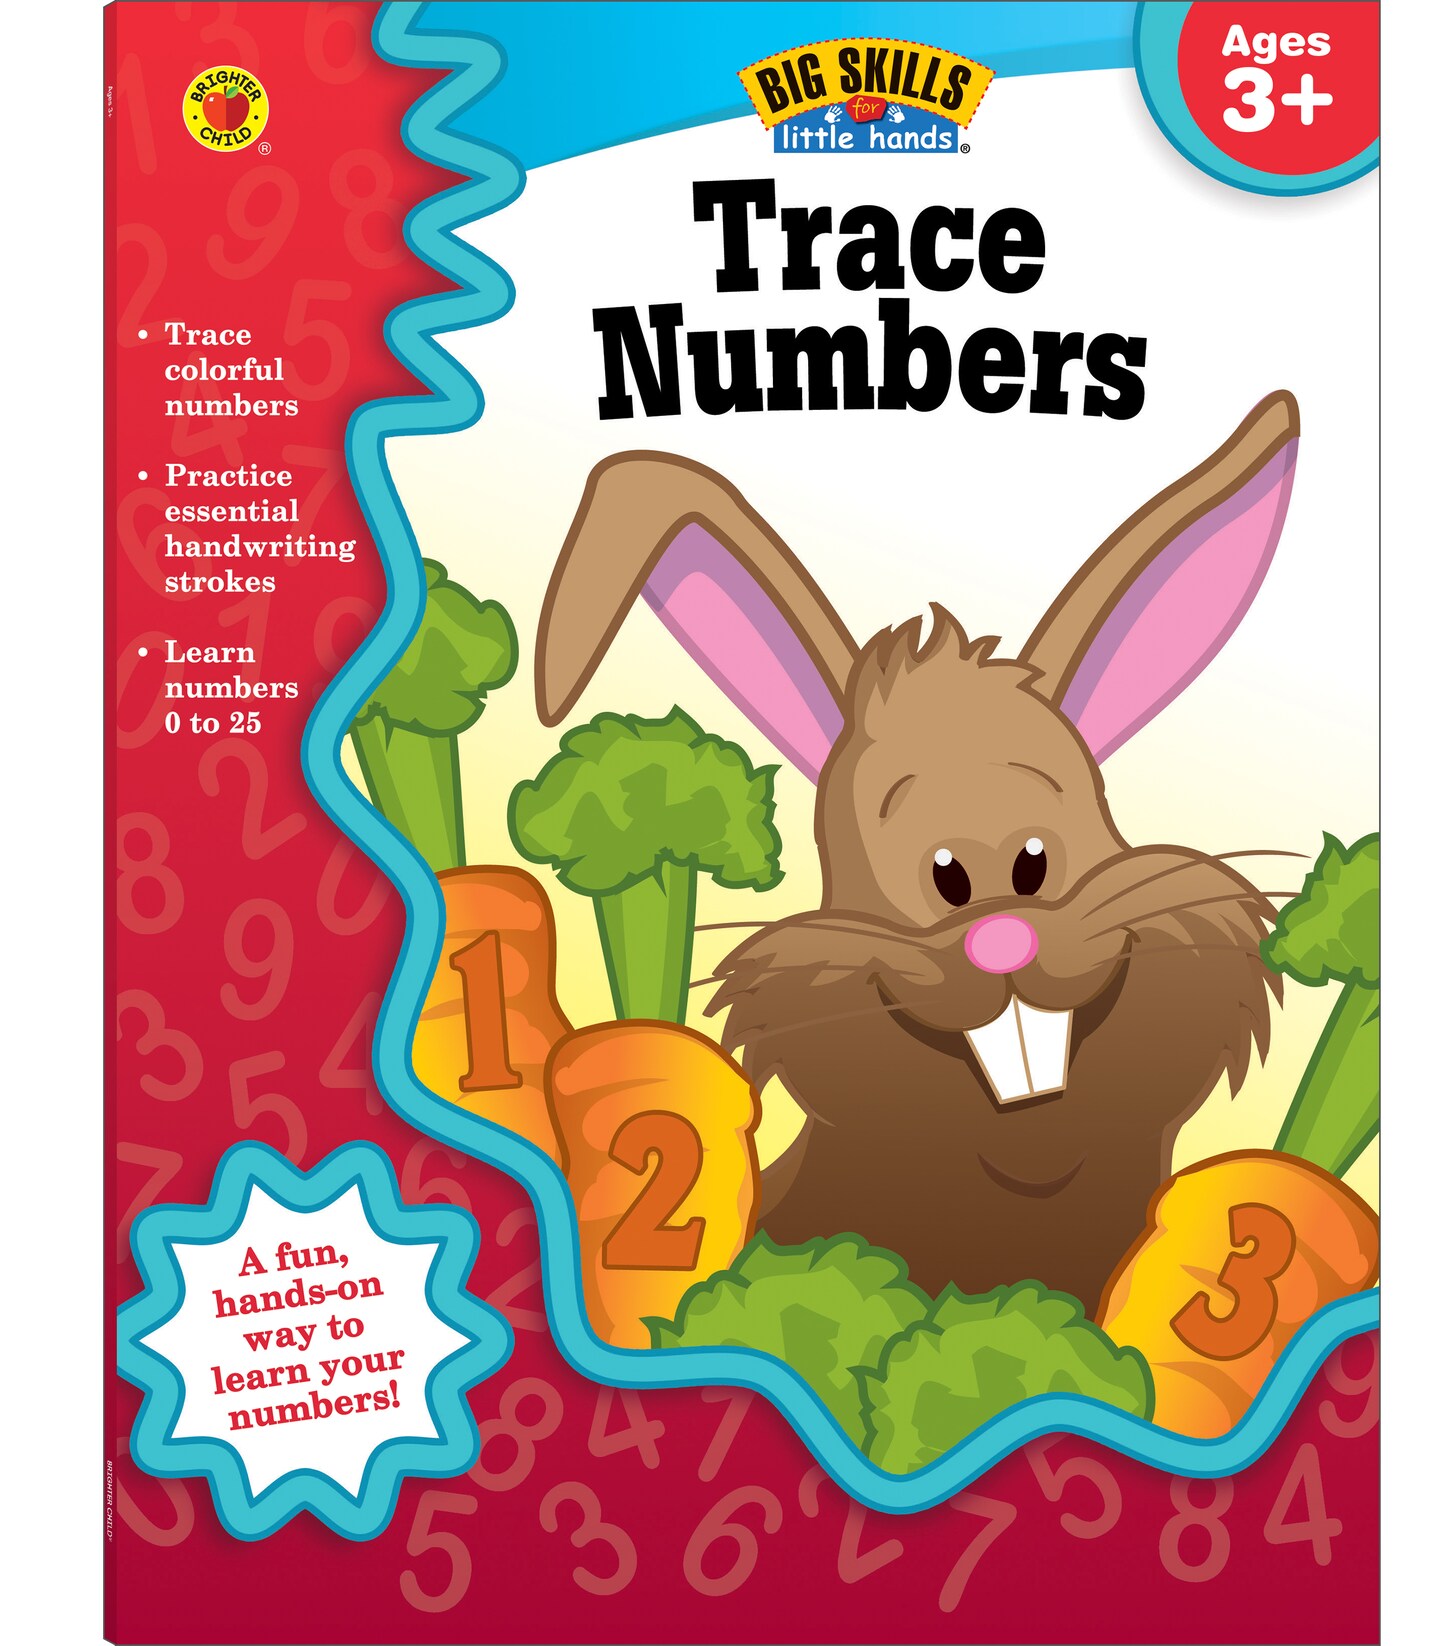 Carson Dellosa Trace Numbers Workbook for Preschool-Kindergarten&#x2014;Number Tracing Practice Book, Ages 3-5, PreK-Kindergarten, Homeschool, Daycare (32 pgs)